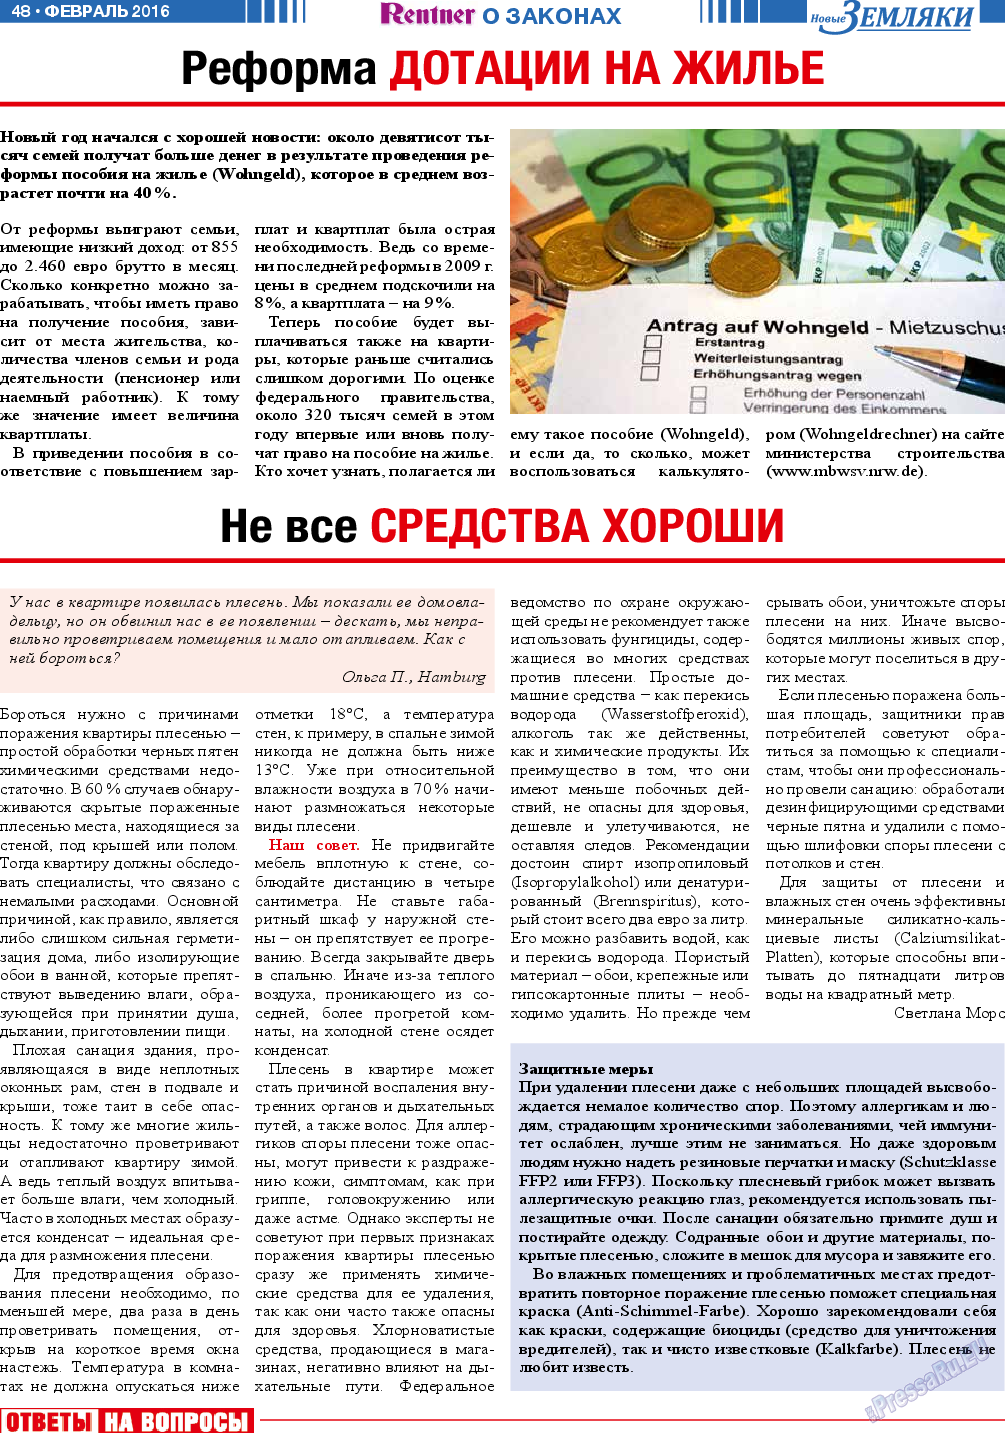 Новые Земляки, газета. 2016 №2 стр.48